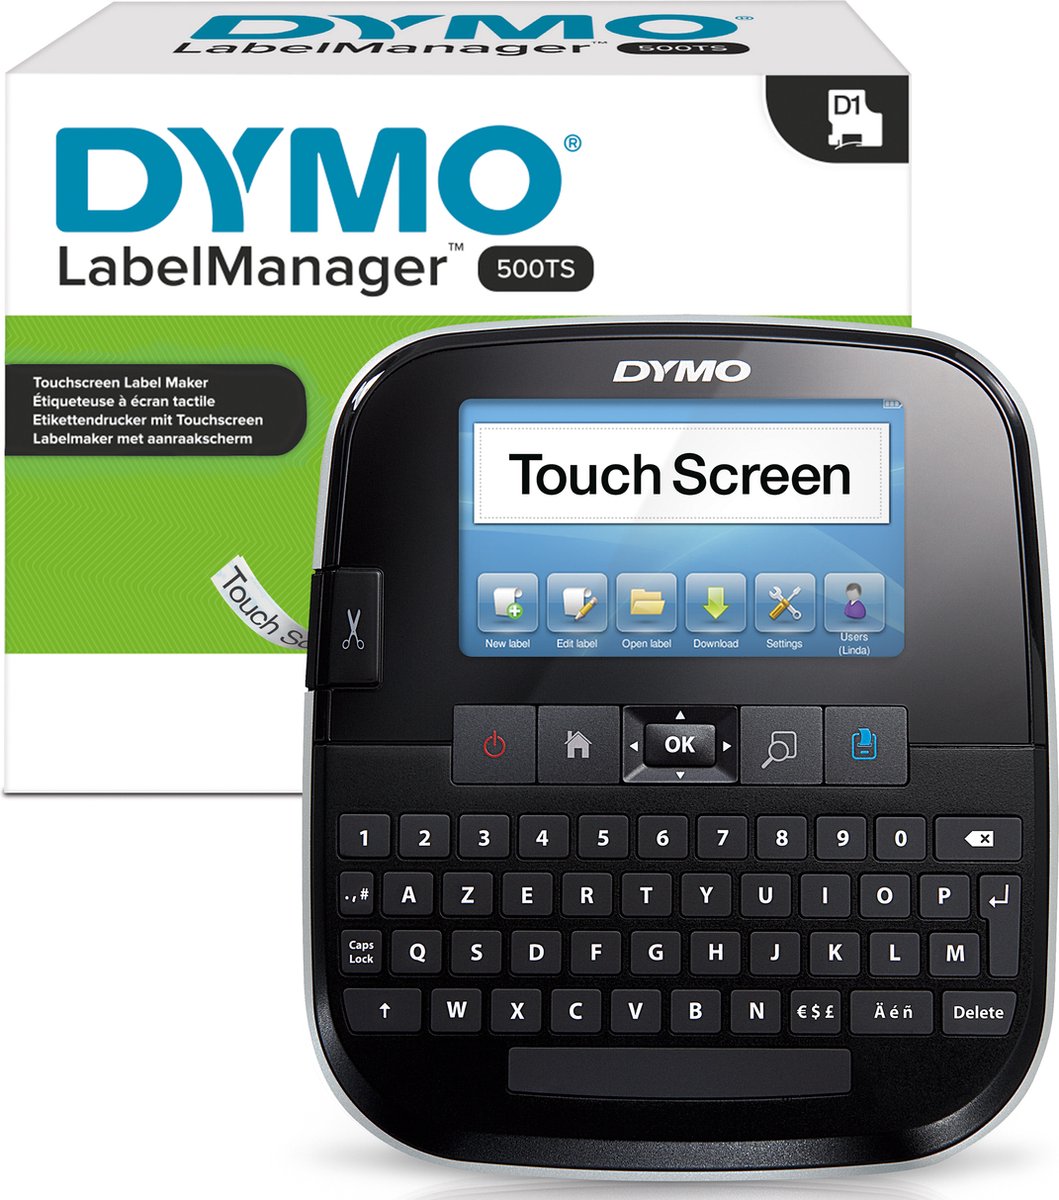 DYMO Label Manager 500TS Handheld labelmaker met aanraakscherm en AZERTY-toetsenbord, volledig in kleur, met pc- en Mac-aansluiting